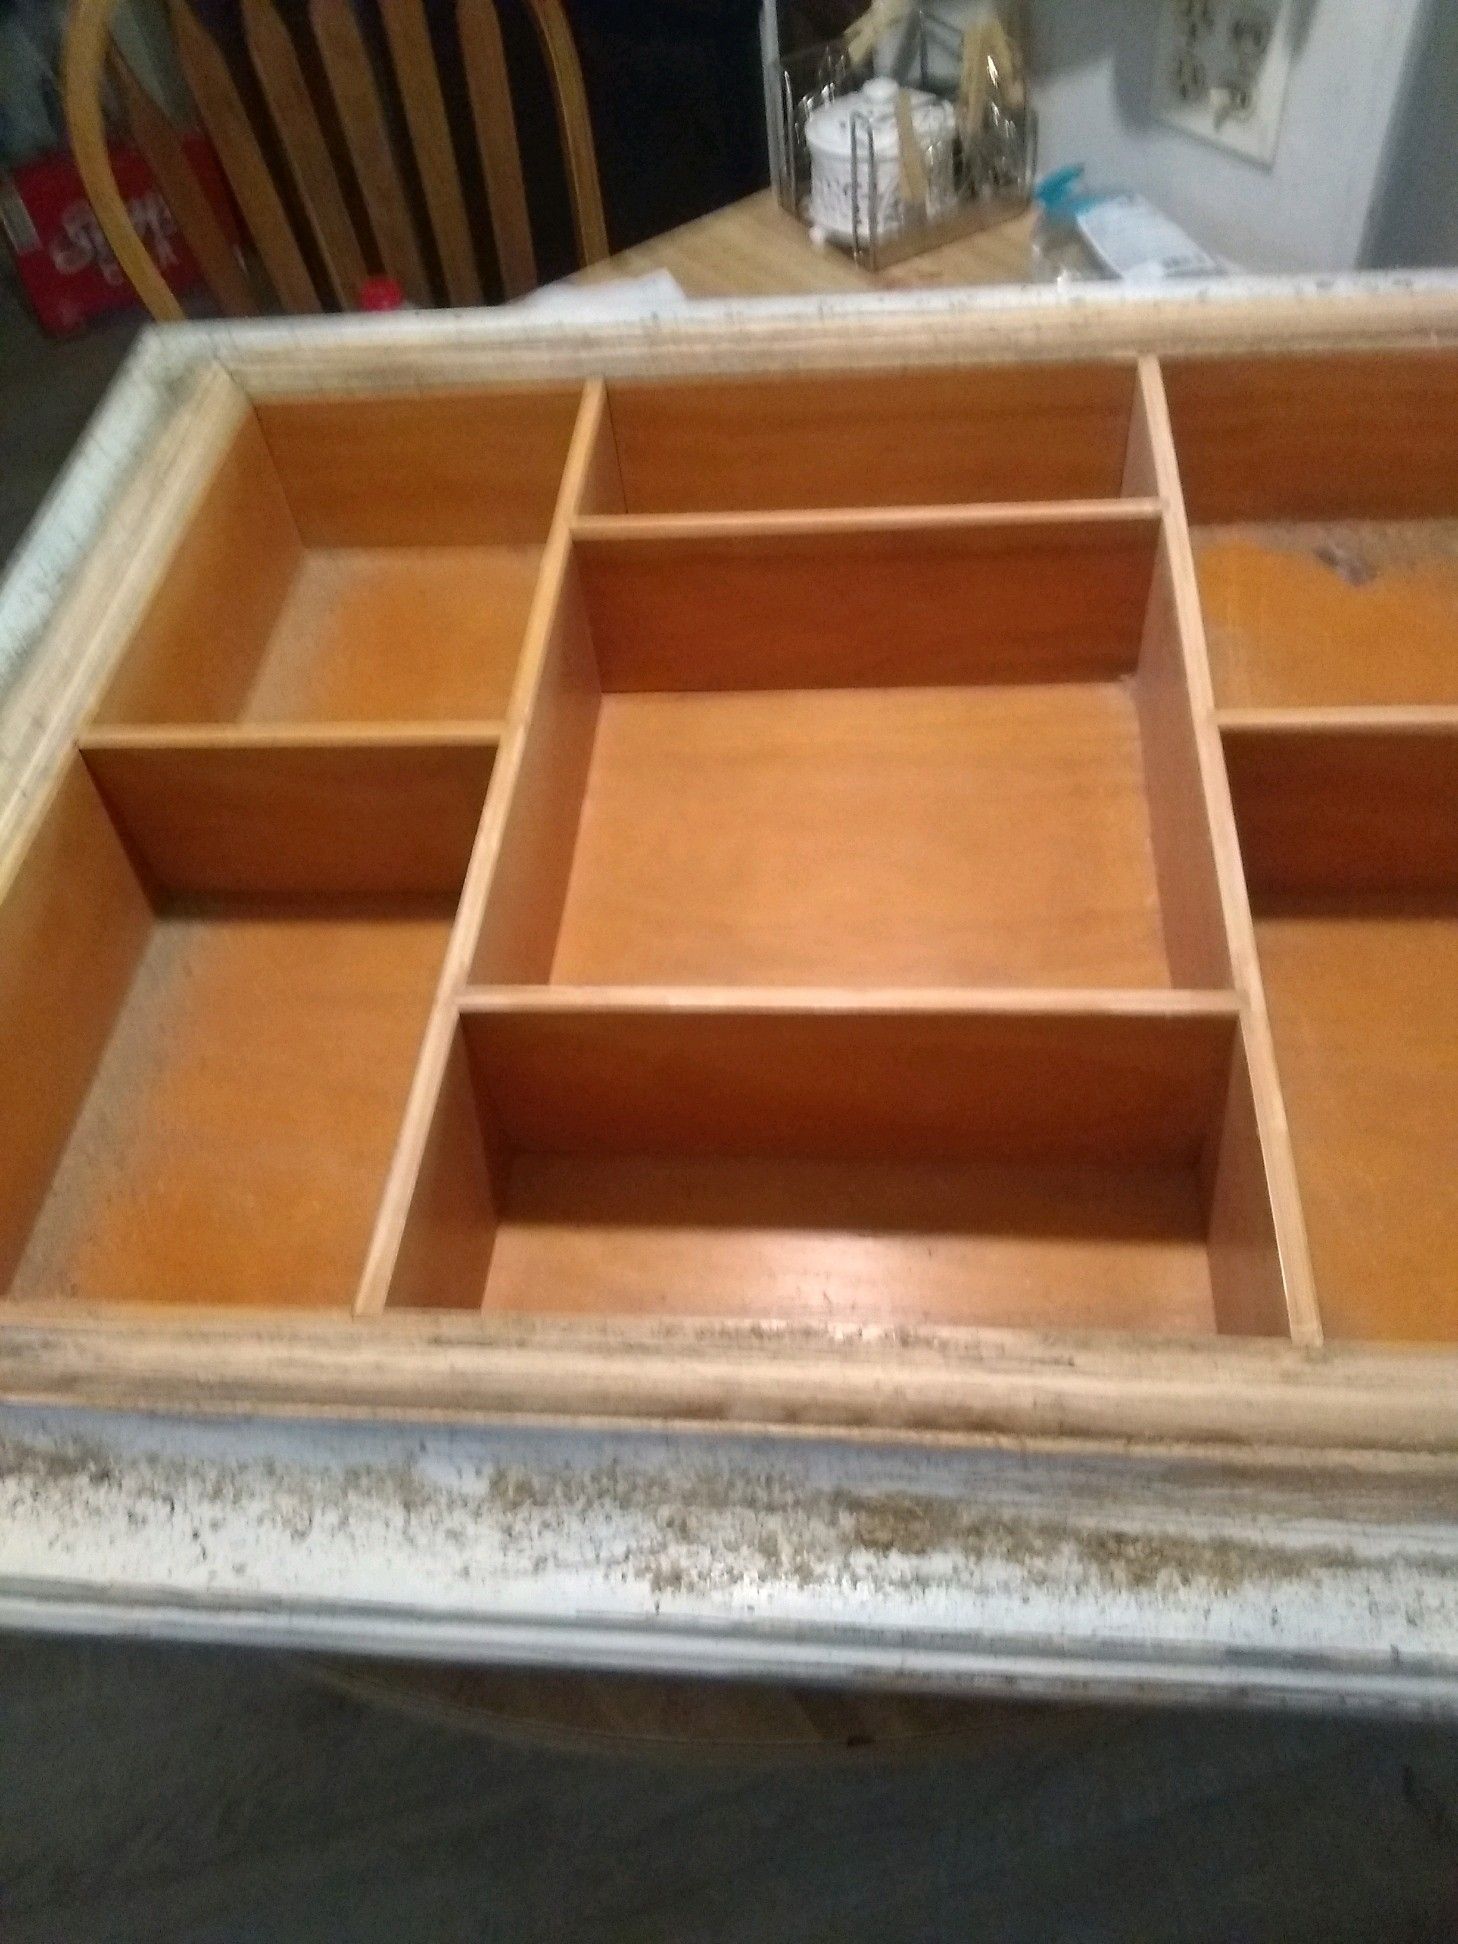 Shelf organizer shadowbox solid wood